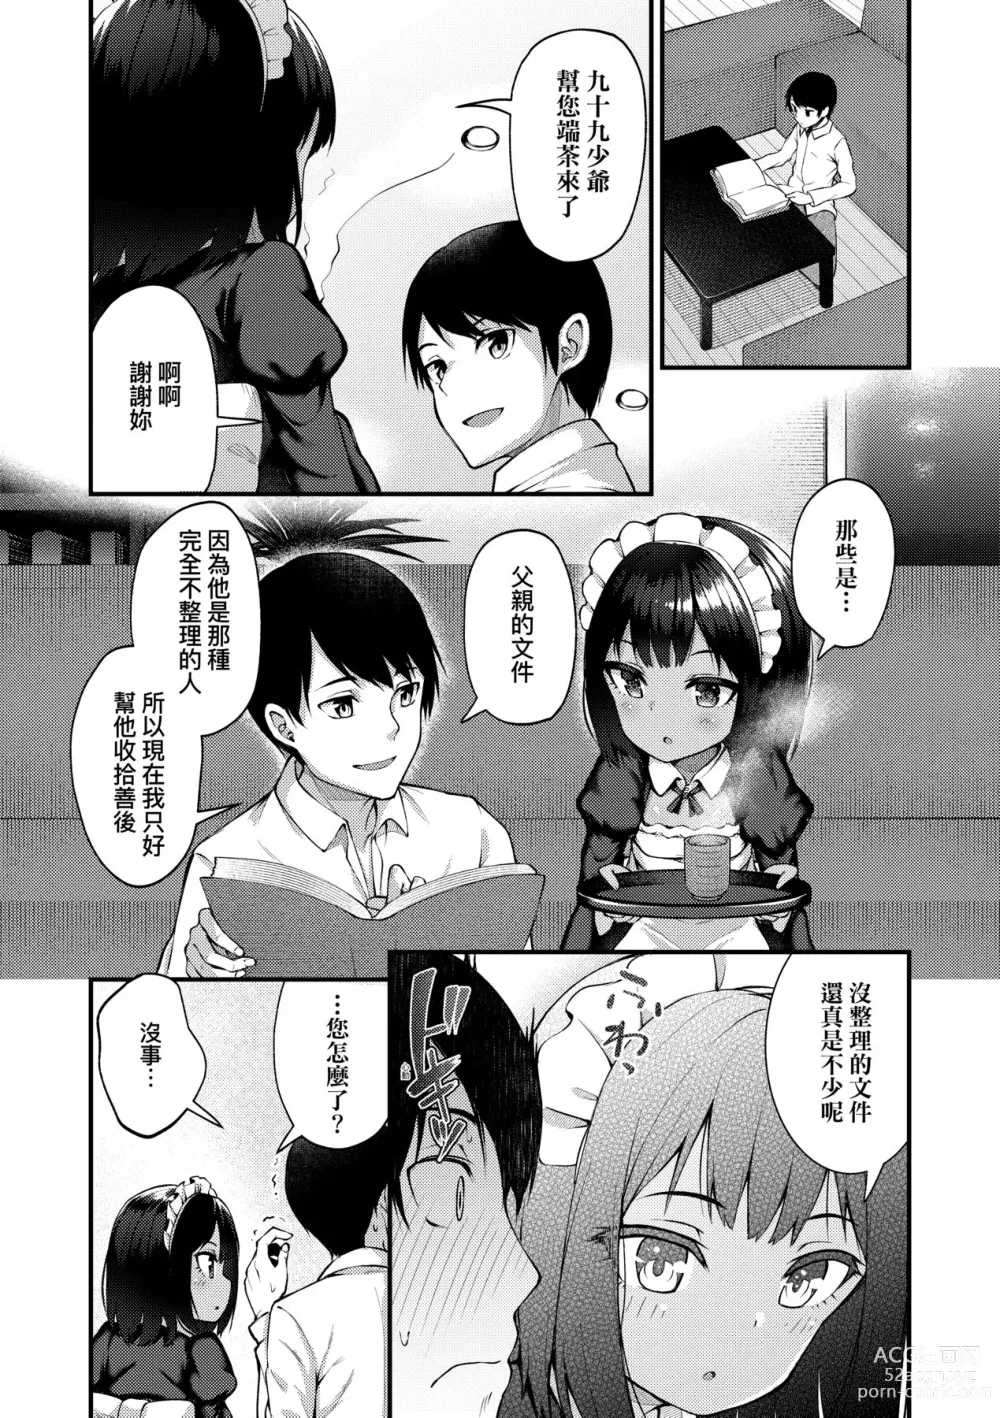 Page 9 of manga Chojyu Giga (decensored)